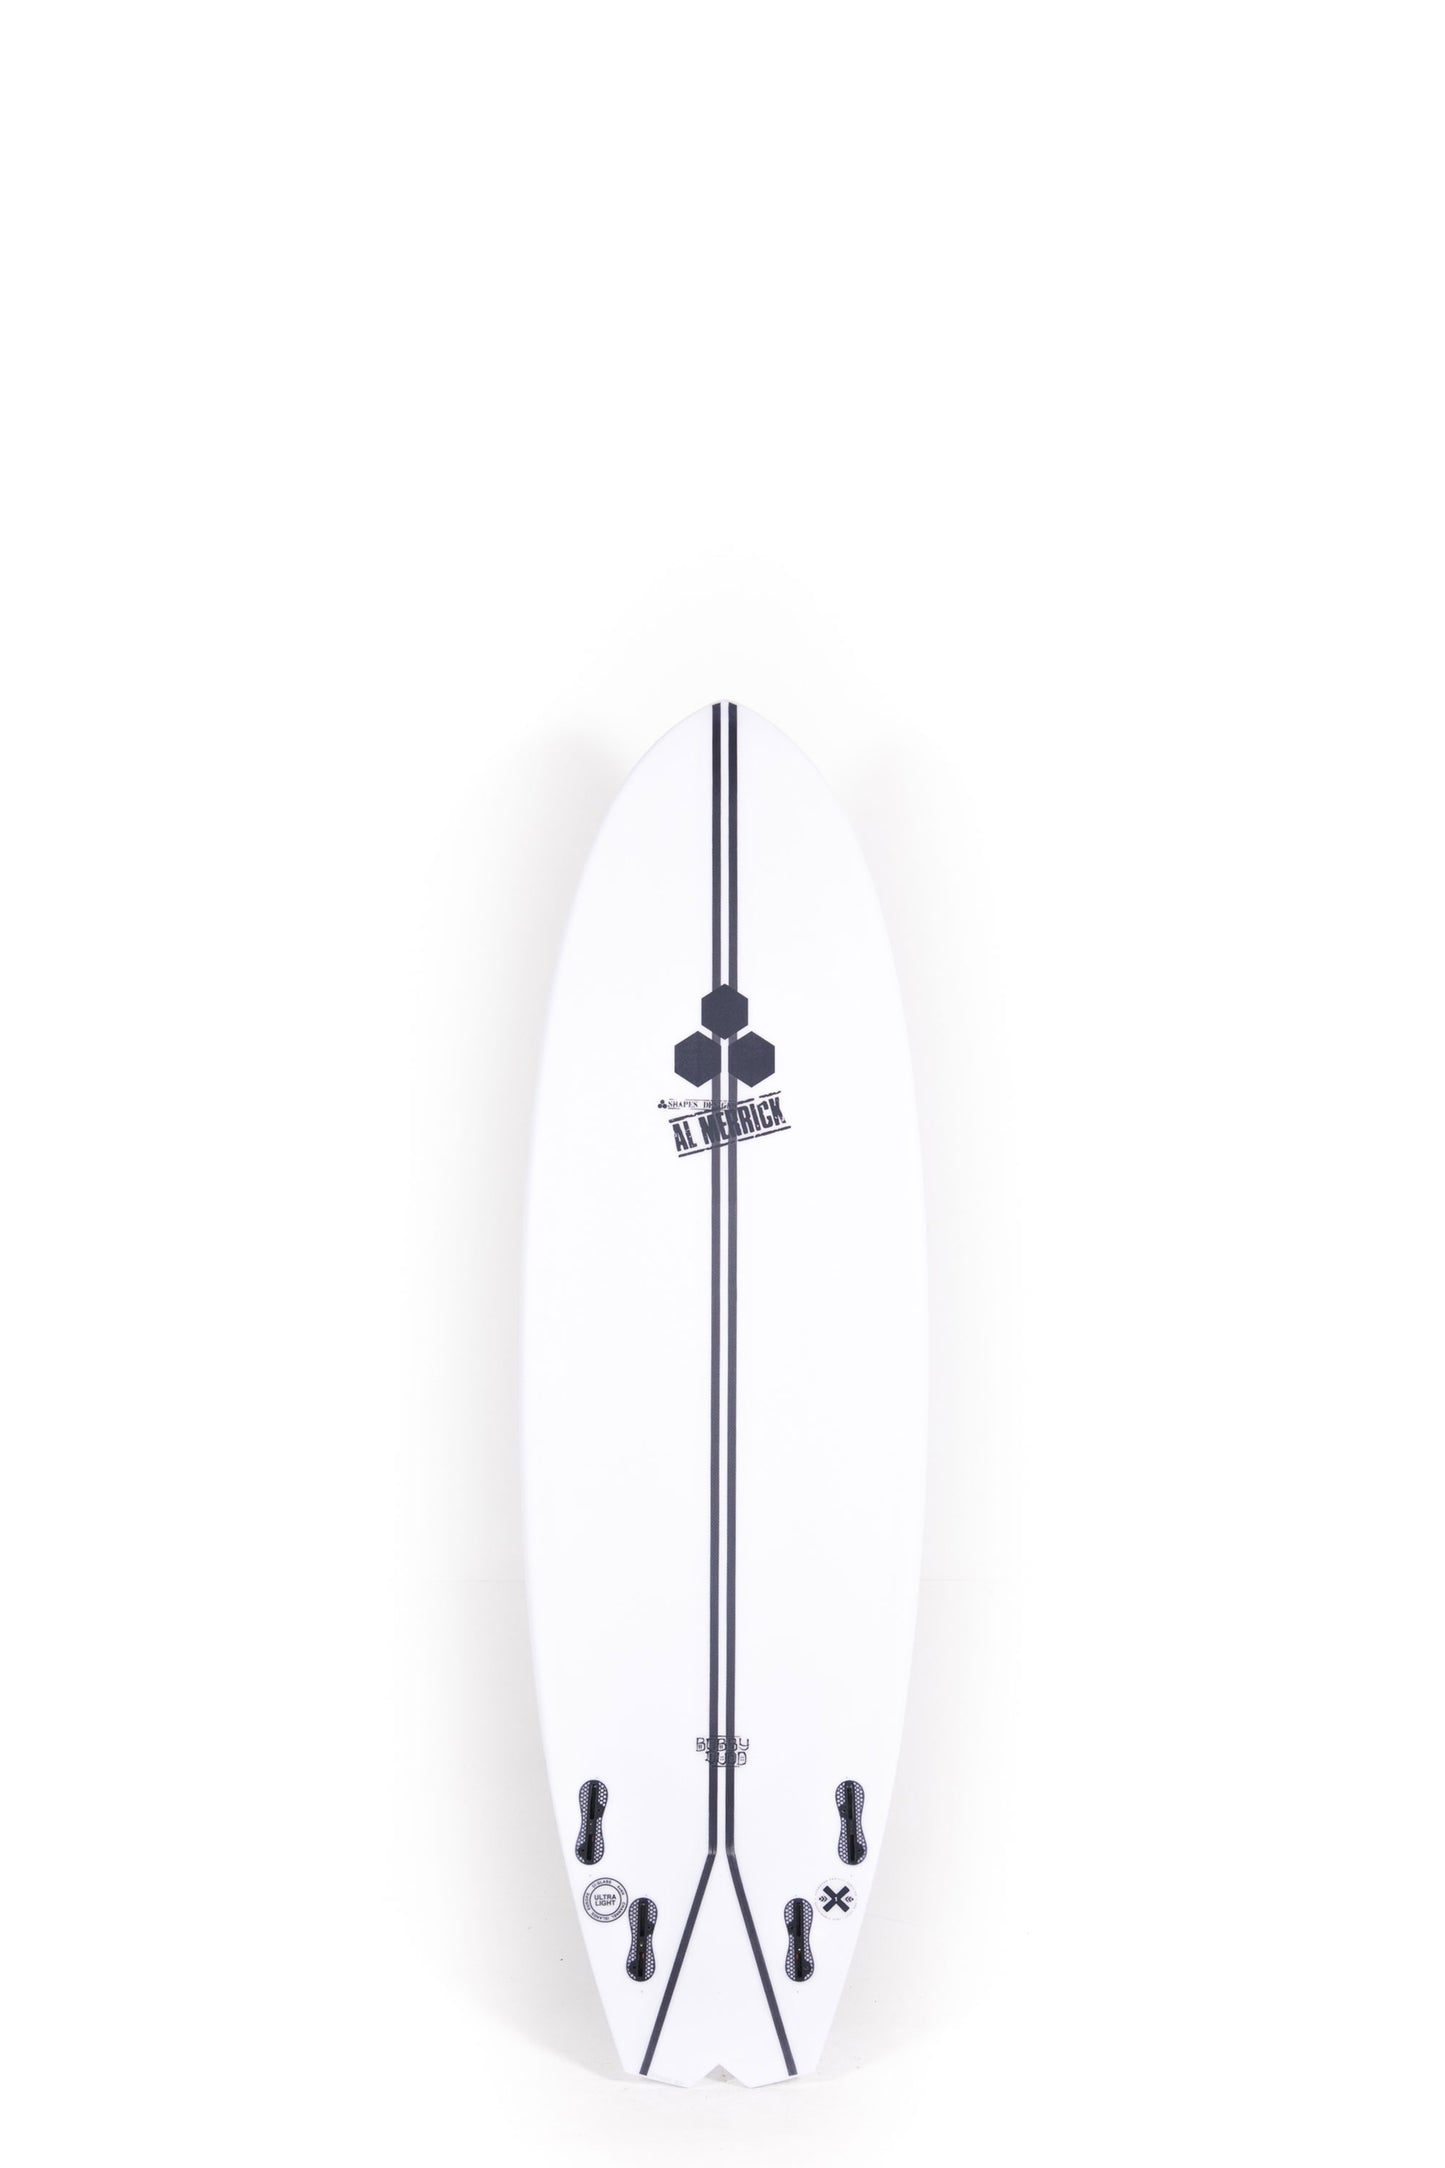 Pukas Surf Shop Channel Islands Surfboard Bobby Quad Spine Tek 6'0"